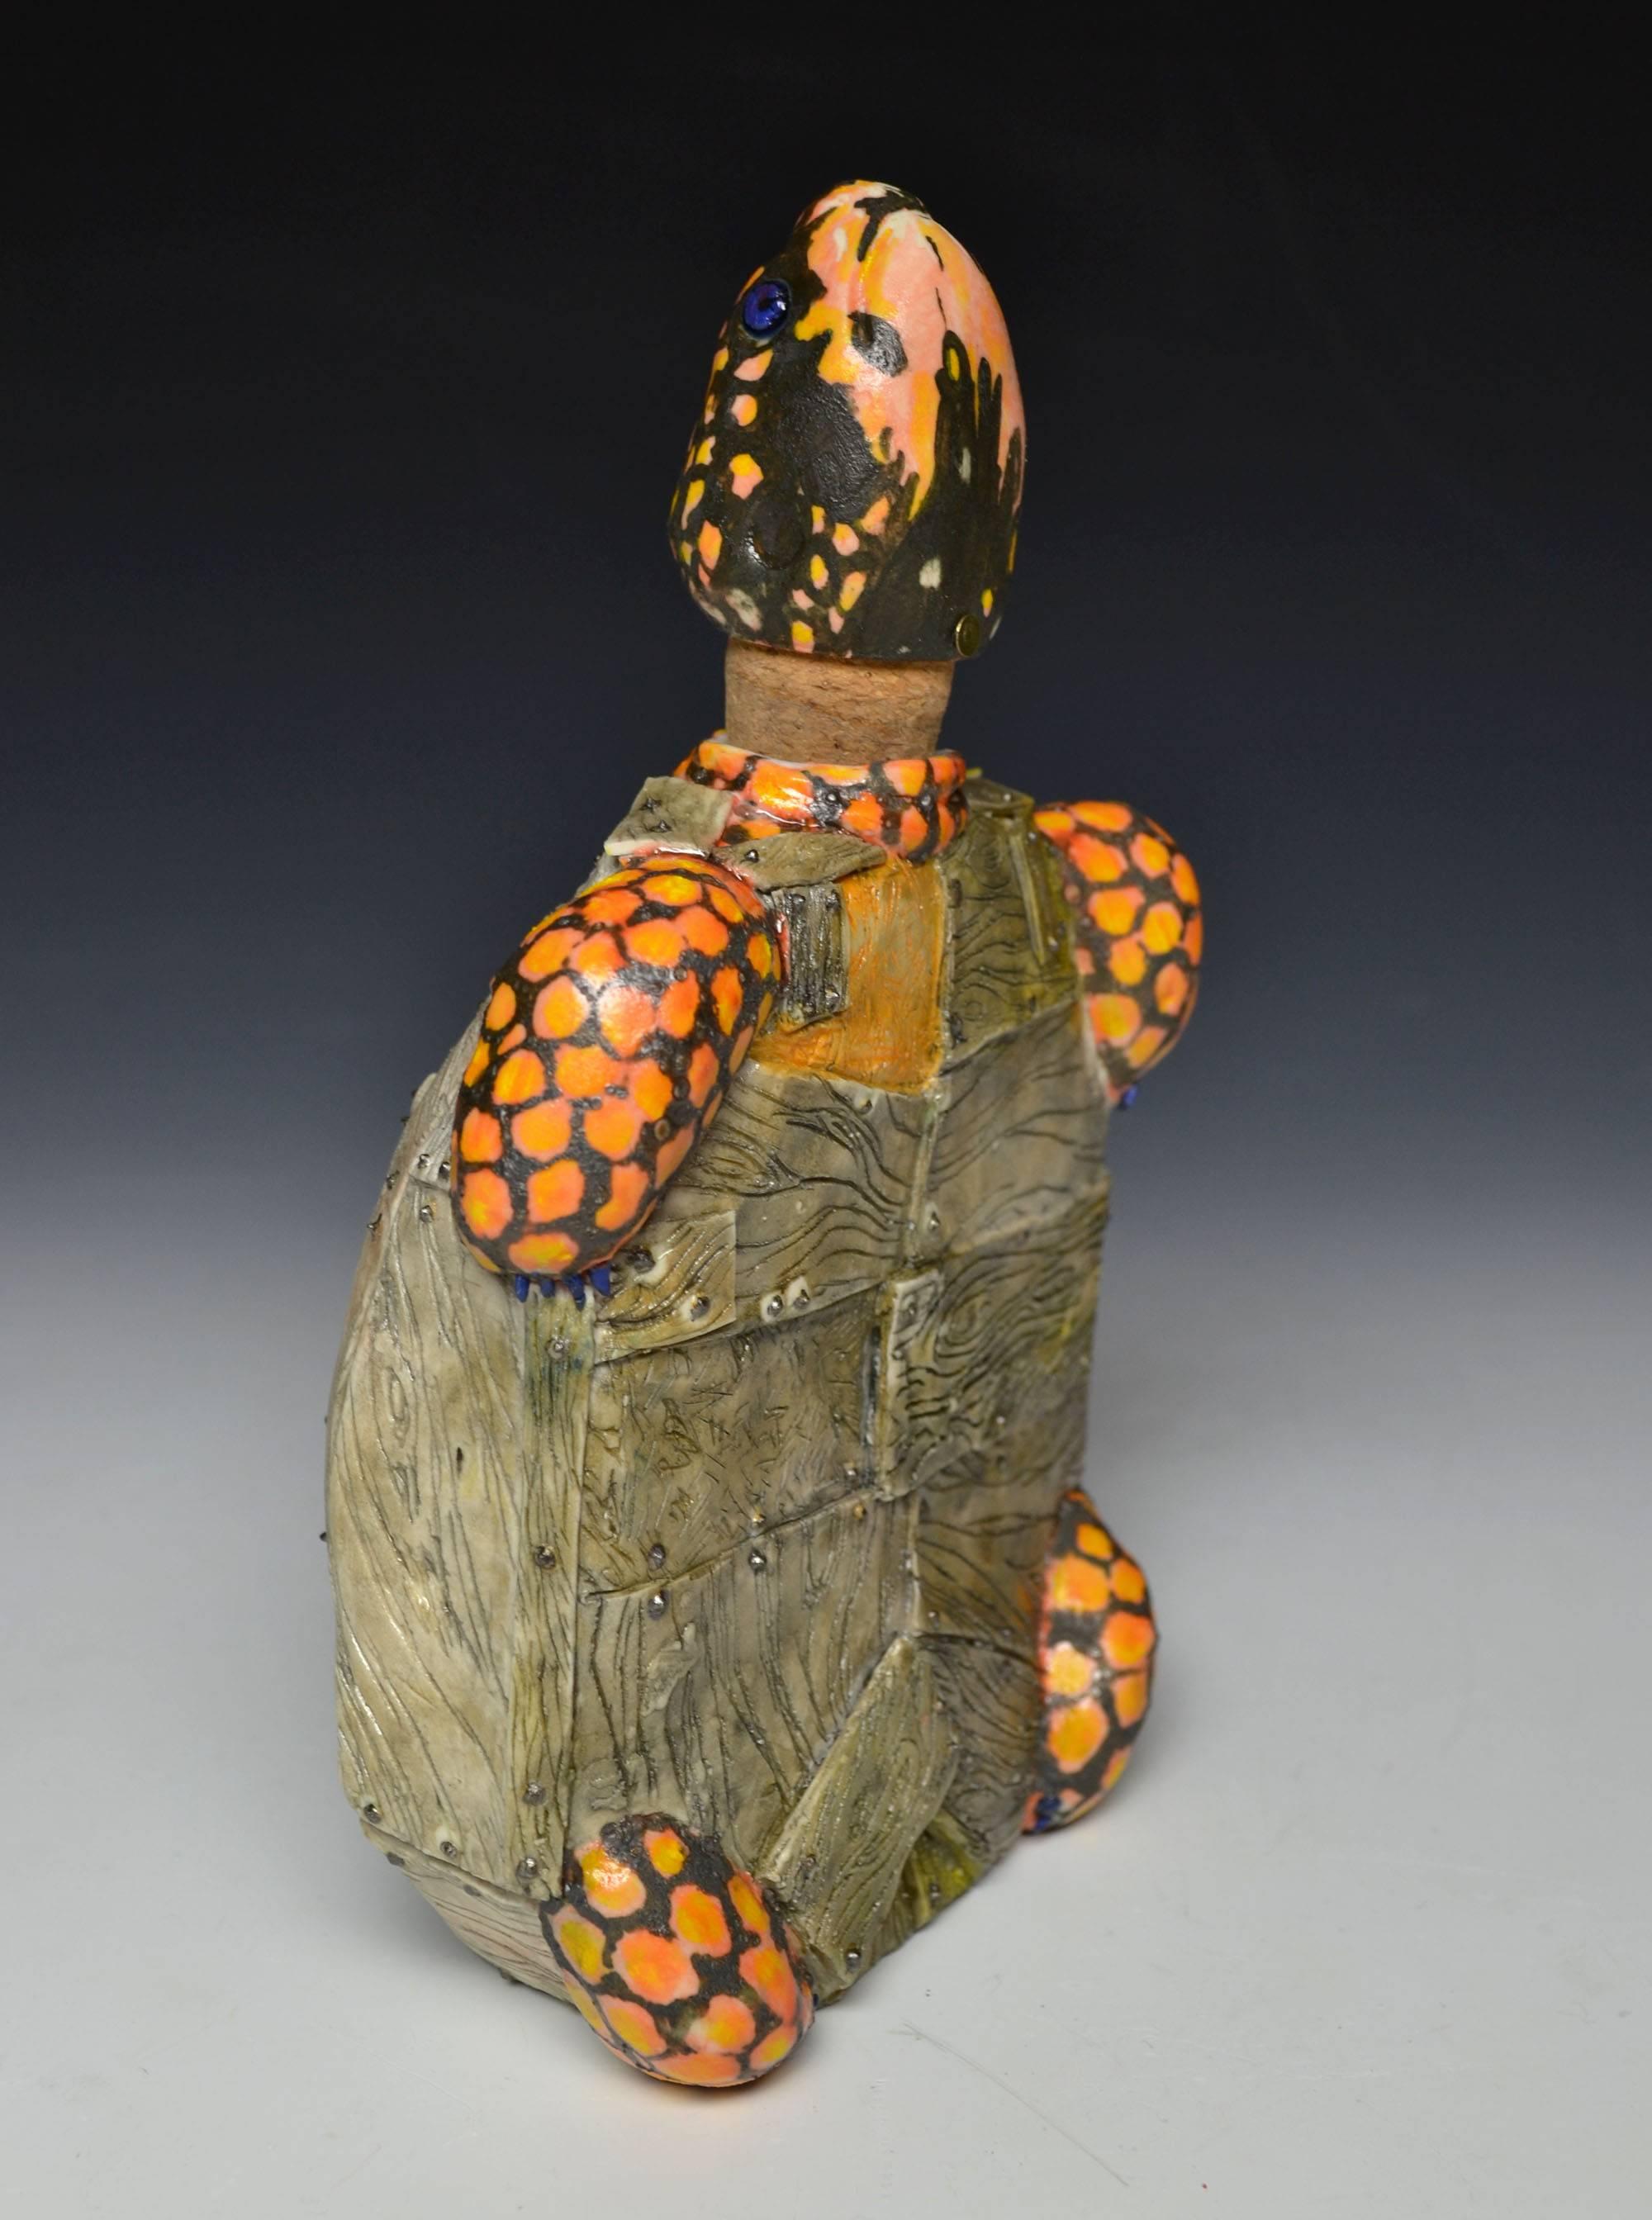 Brandon Schnur Figurative Sculpture - Eastern (Box) Crate Turtle Flask